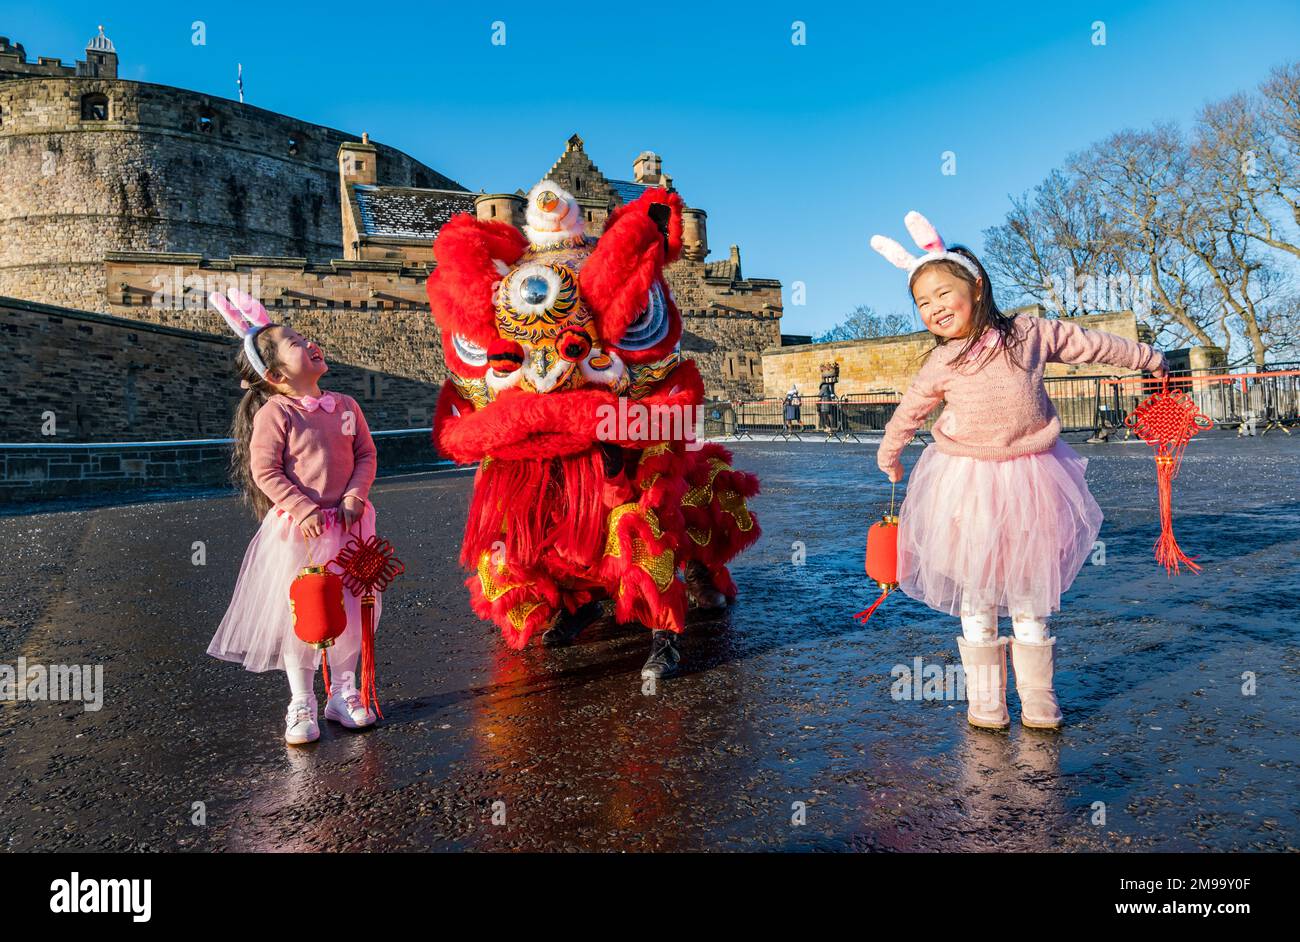 Giovani ragazze cinesi che indossano orecchie di coniglio intrattenuti da danzatori drago per celebrare il Capodanno cinese, (anno del coniglio), Castello di Edimburgo, Scozia, Regno Unito Foto Stock